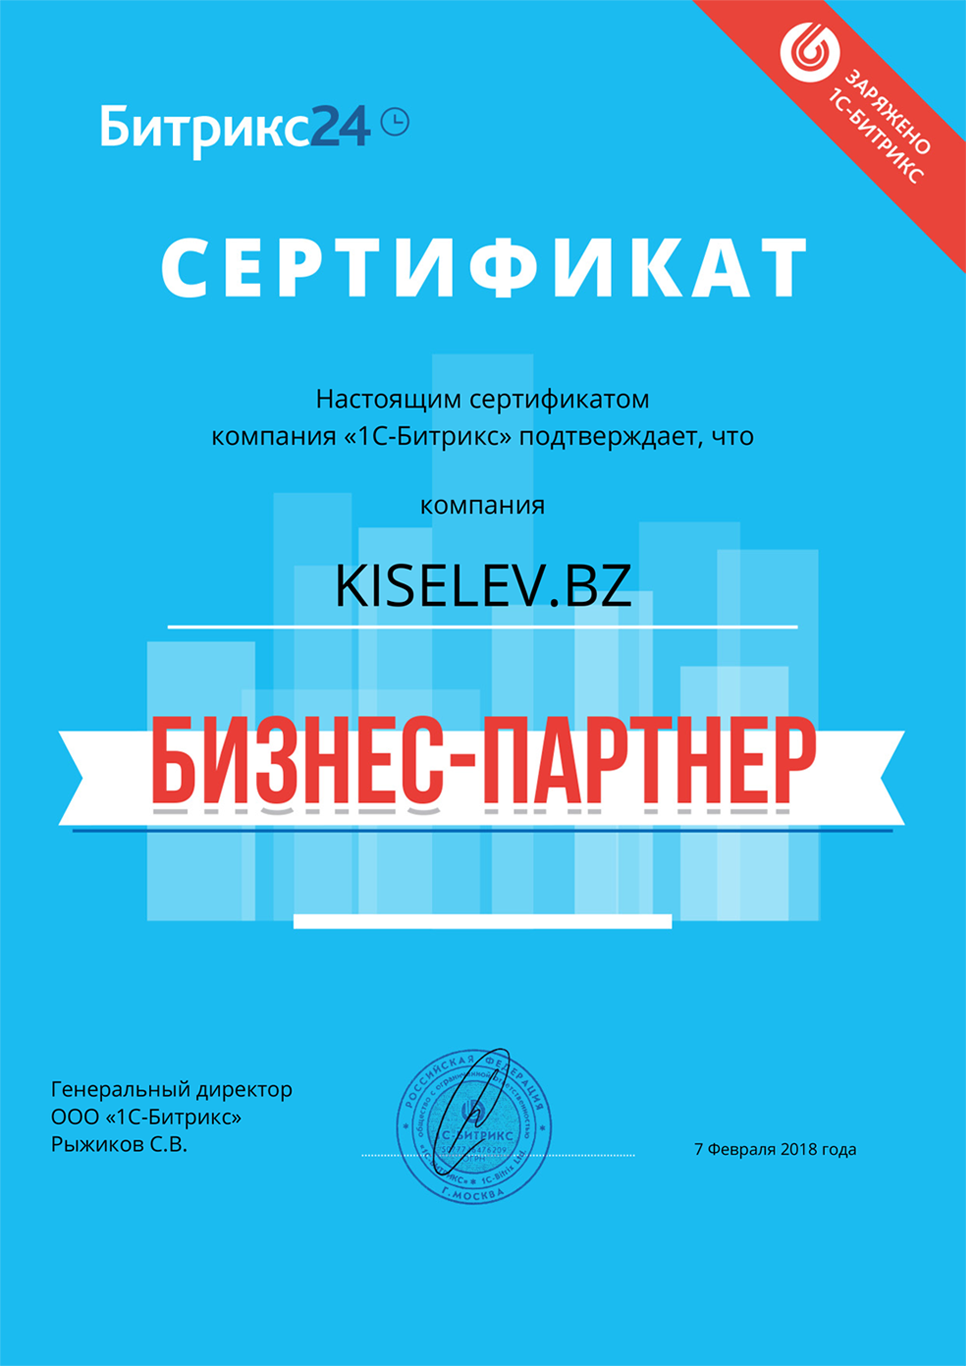 Сертификат партнёра по АМОСРМ в Новосокольниках